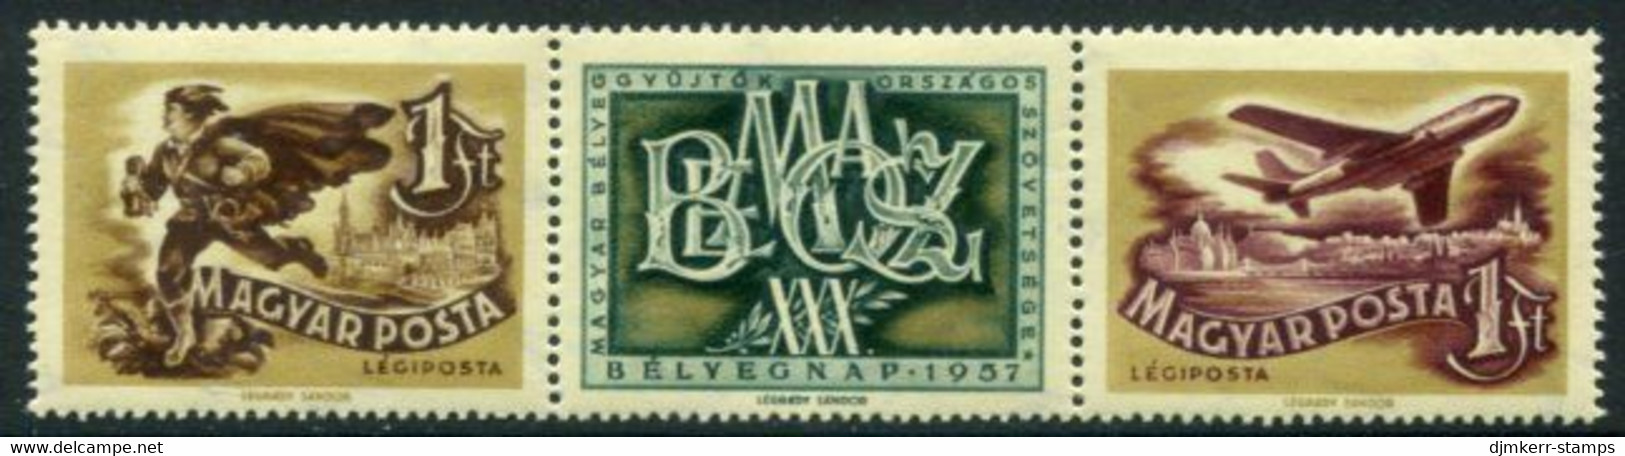 HUNGARY 1957 Stamp Day MNH / **.  Michel 1501-02 - Ongebruikt